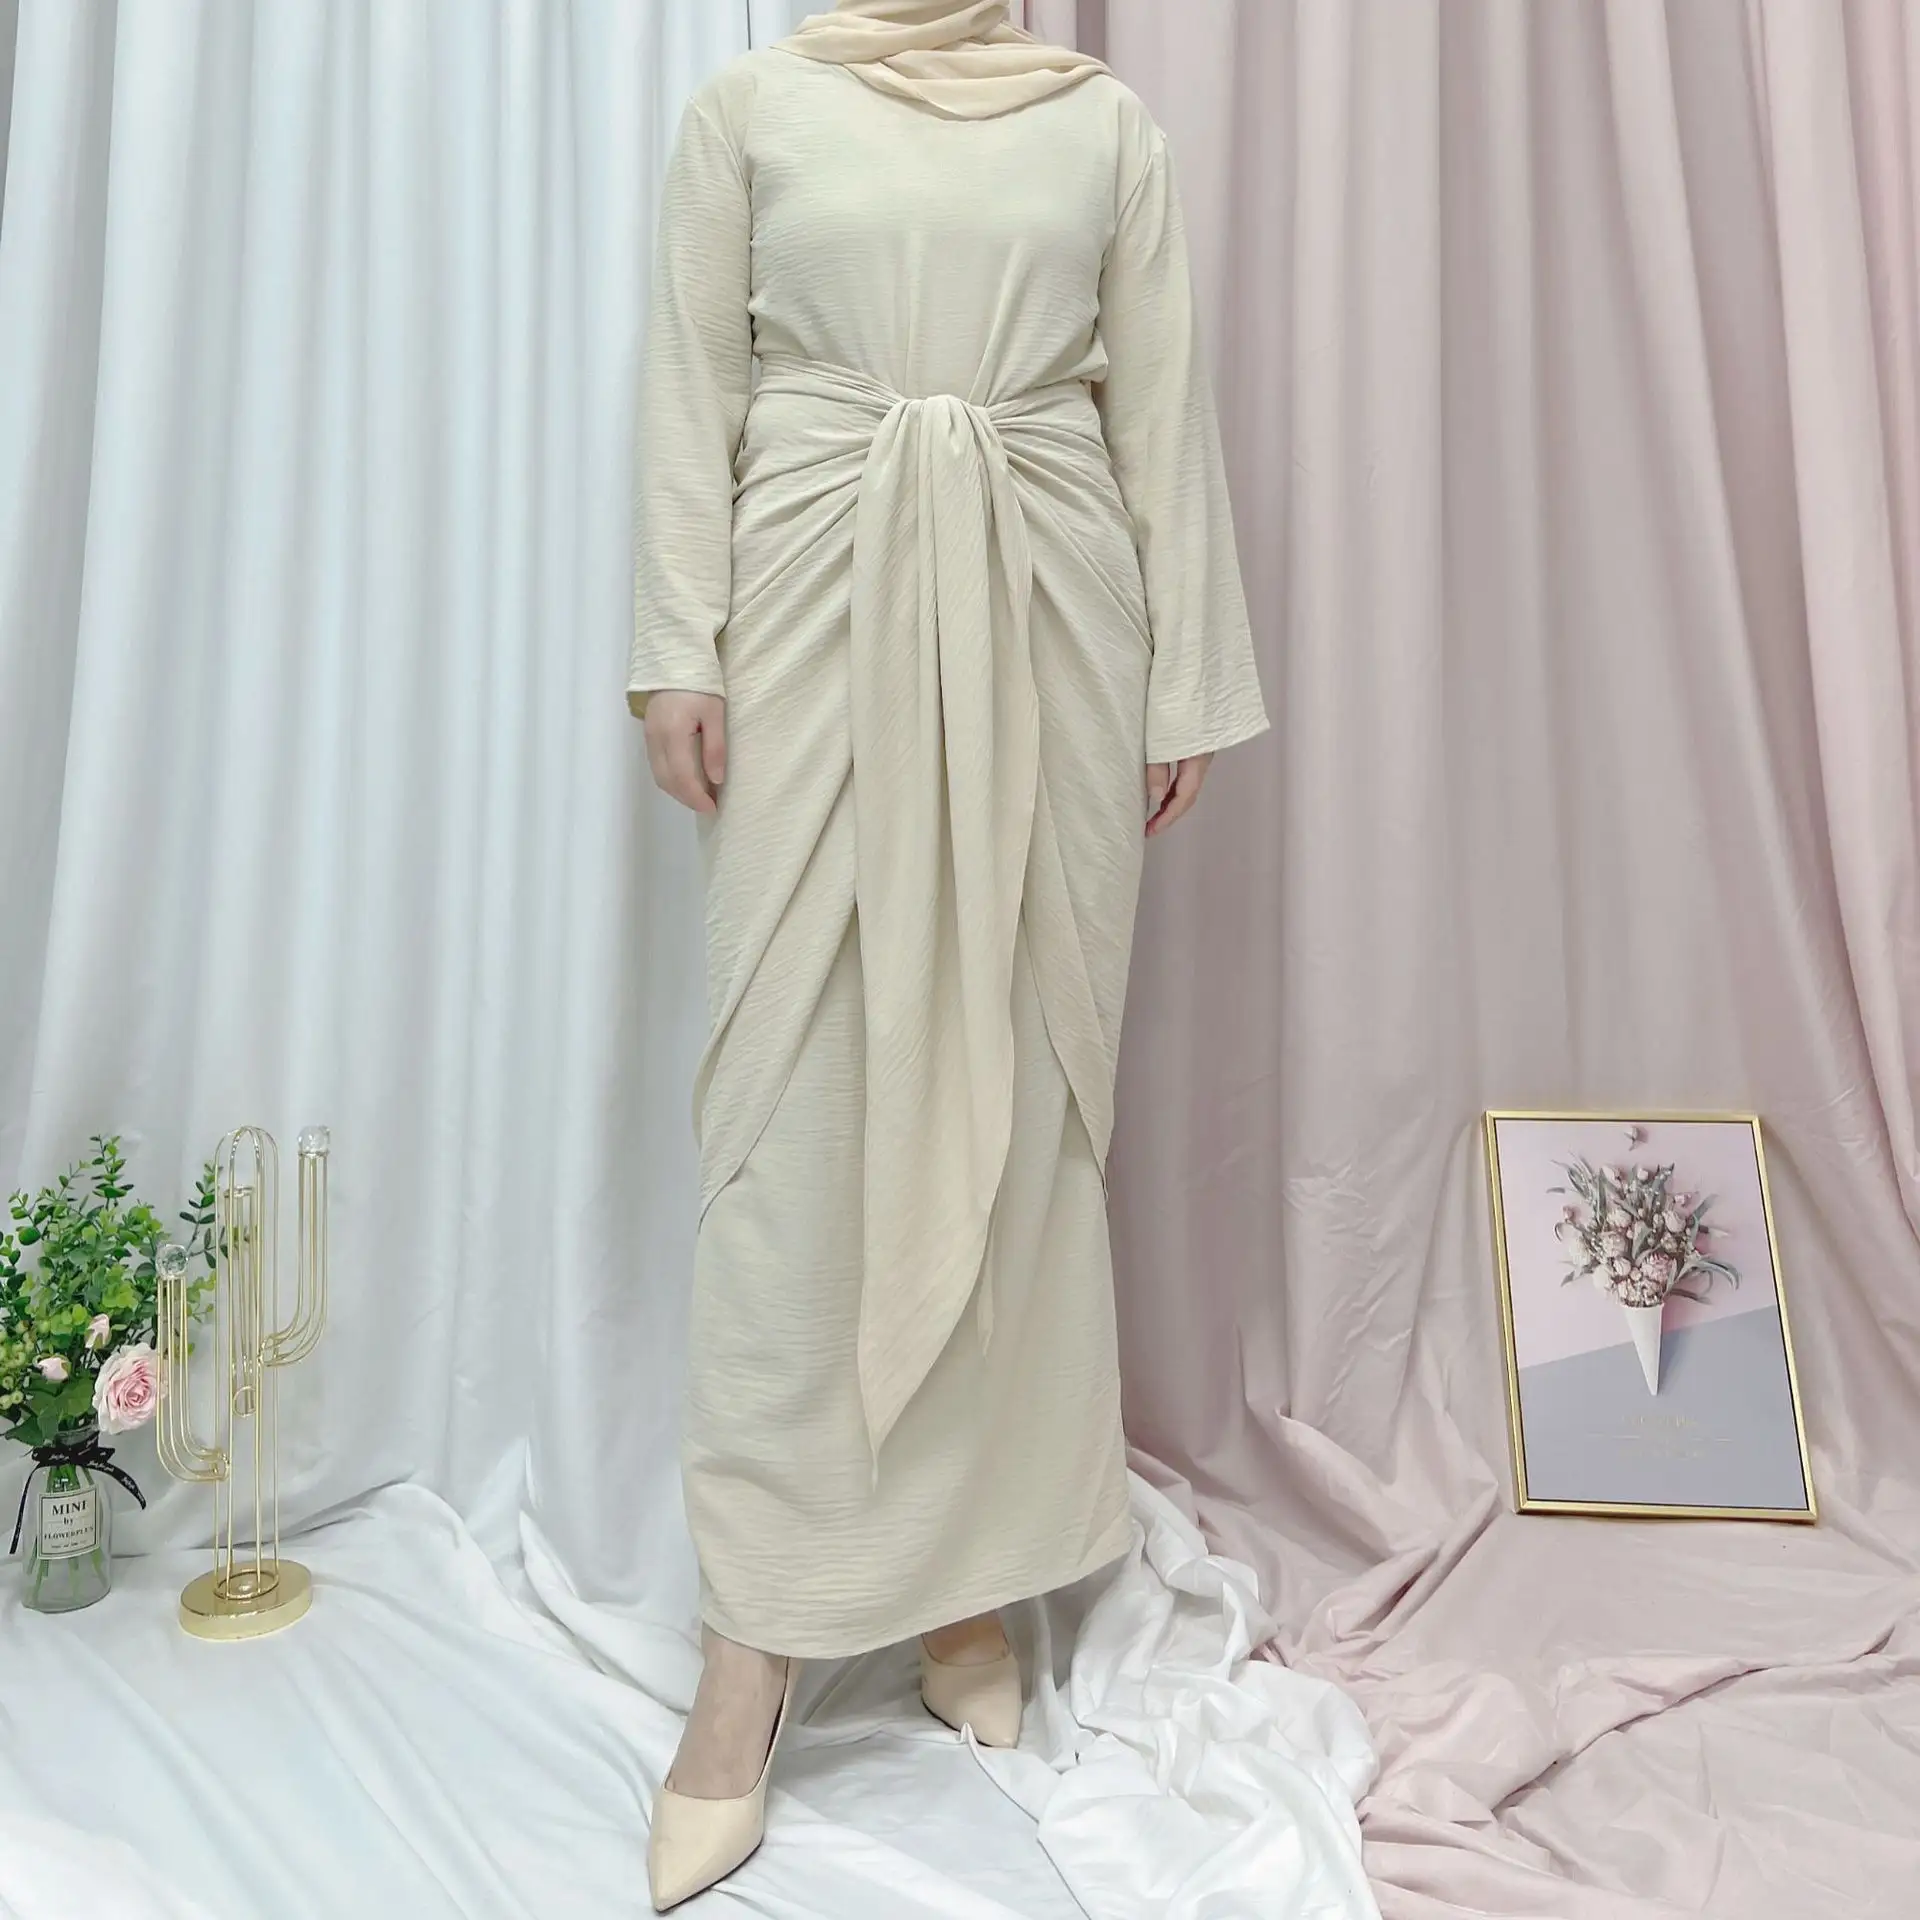 Mới Nhất Nữ Tính Rắn Tự-Vành Đai Phía Trước Của Phụ Nữ Hồi Giáo Abaya Dubai Satin Áo Váy Sàn Chiều Dài Đồng Bằng Nhuộm Tự Nhiên Vòng Eo